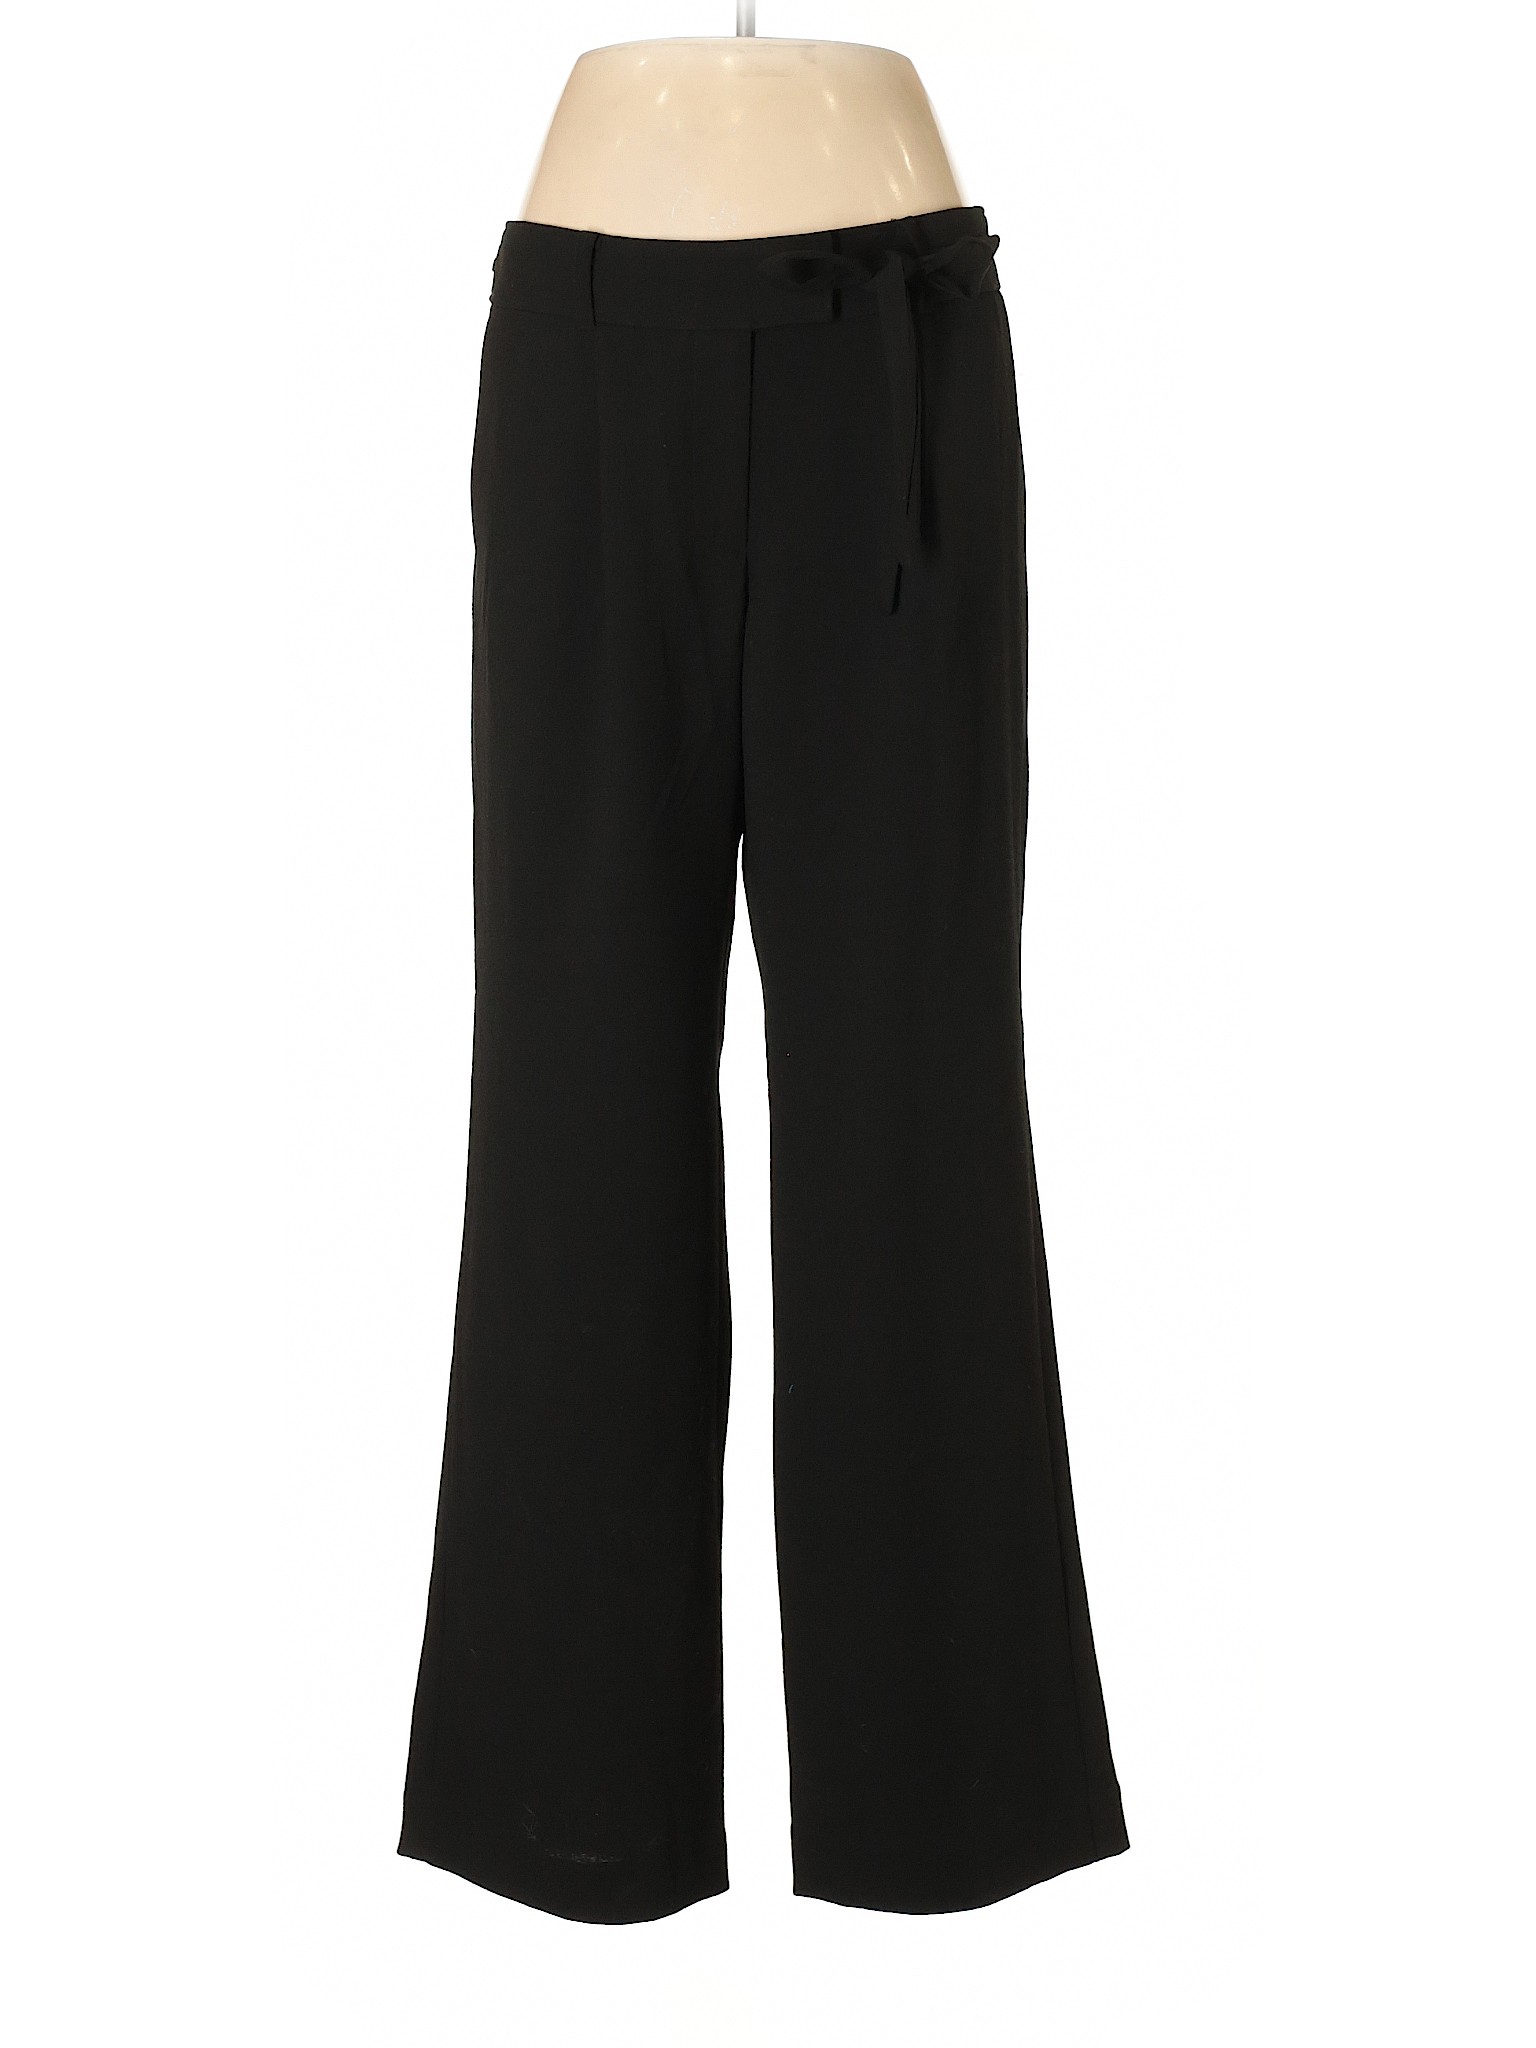 Ann Taylor LOFT Women Black Dress Pants 8 Petites | eBay